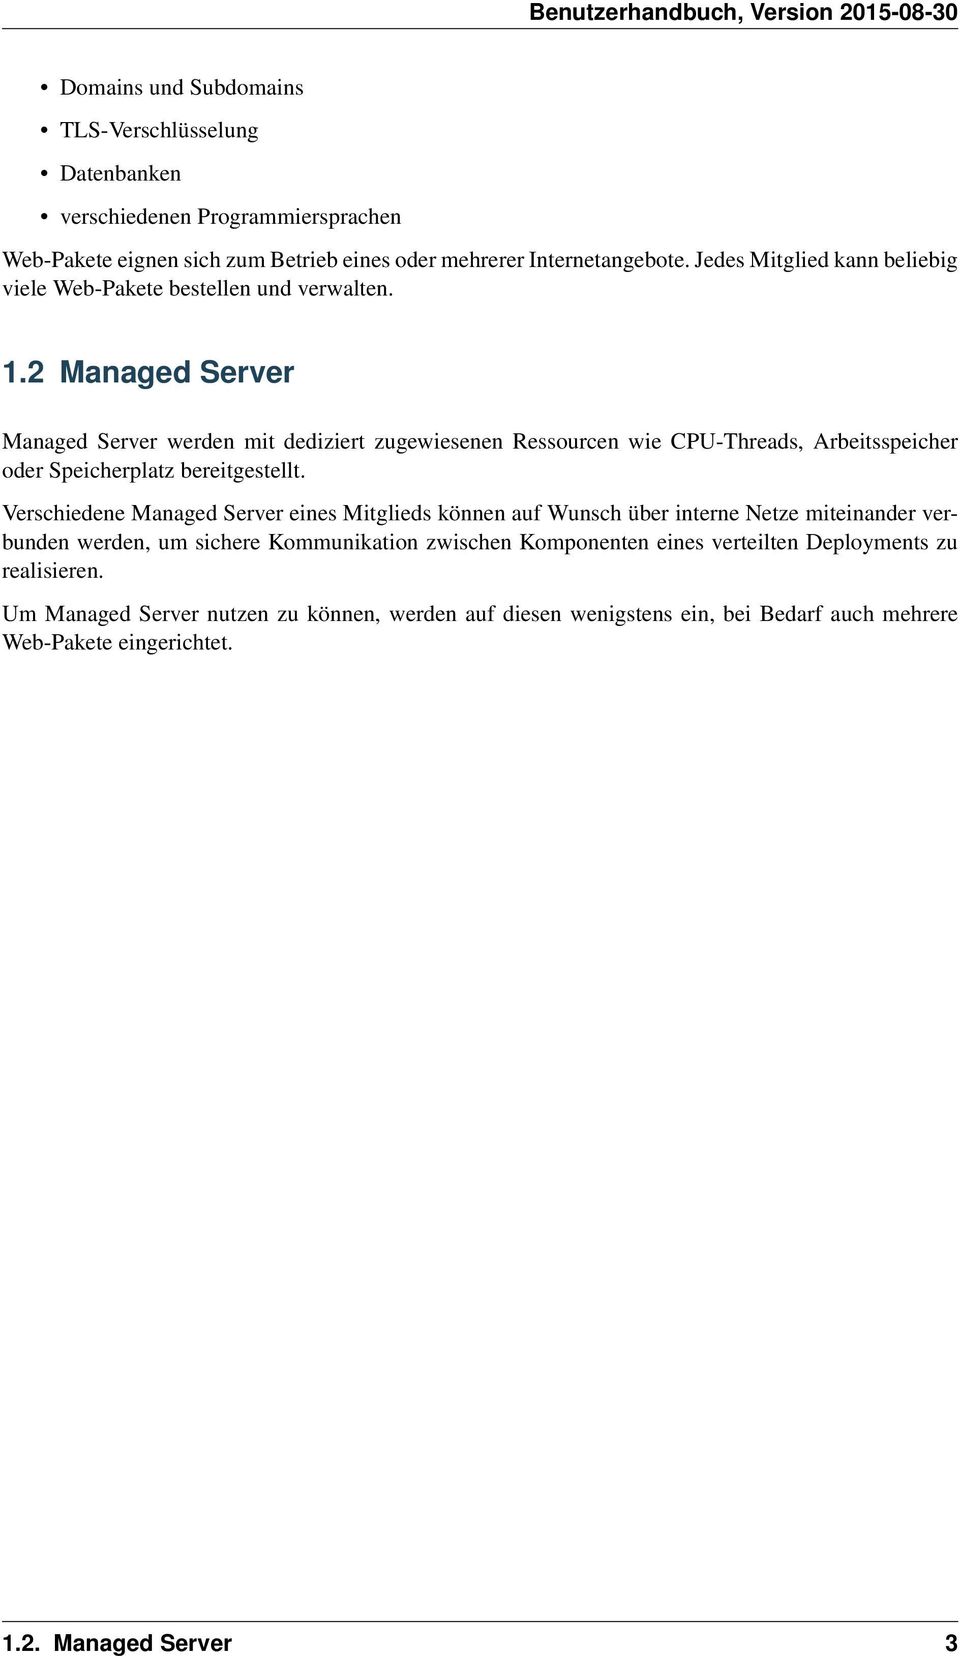 2 Managed Server Managed Server werden mit dediziert zugewiesenen Ressourcen wie CPU-Threads, Arbeitsspeicher oder Speicherplatz bereitgestellt.